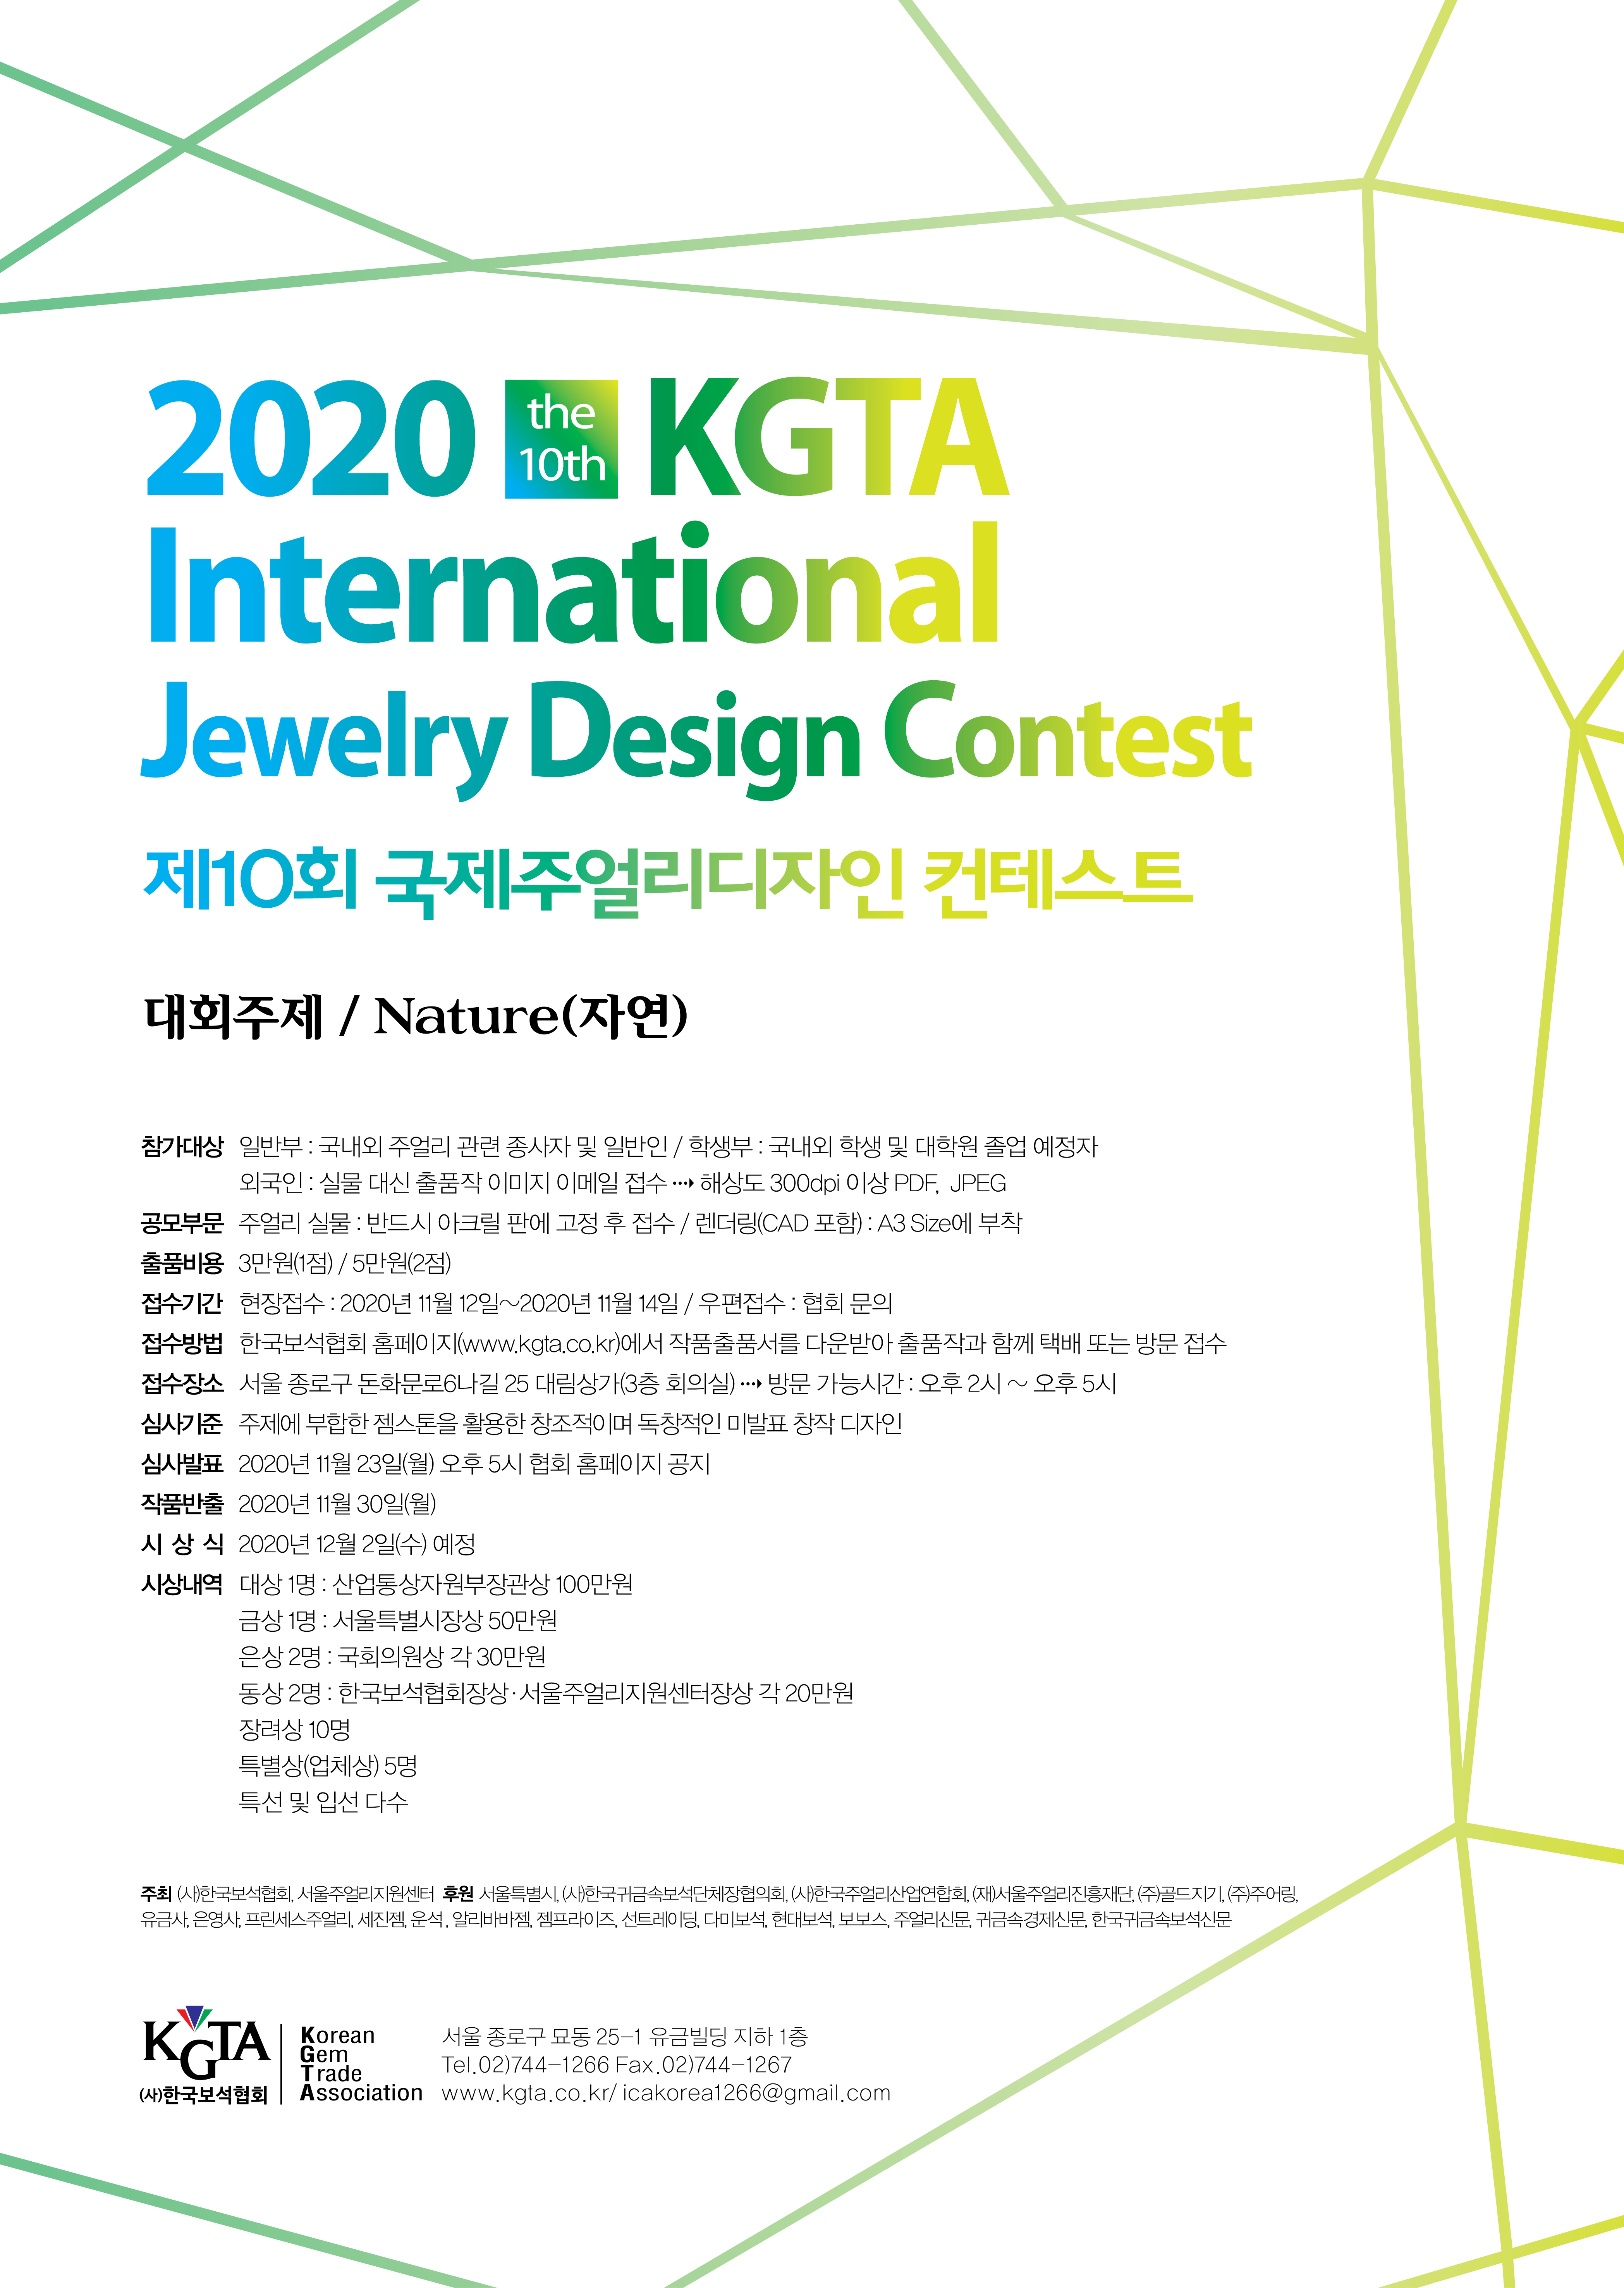 2020 제10회 KGTA International Jewelry Design Contest 공지